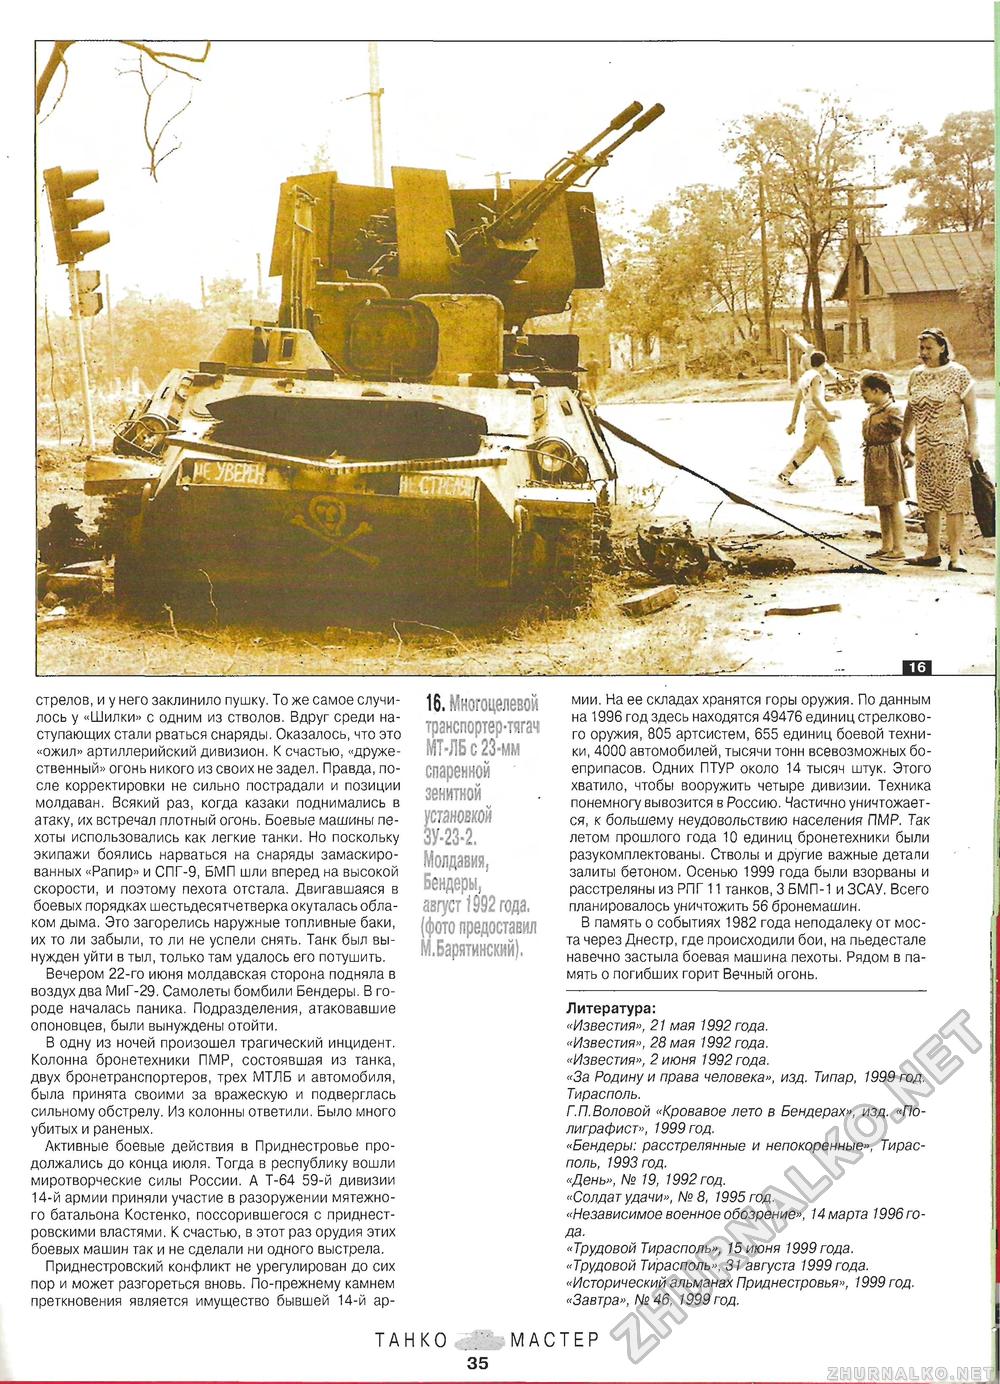 Танкомастер Танки в приднестровье, страница 8